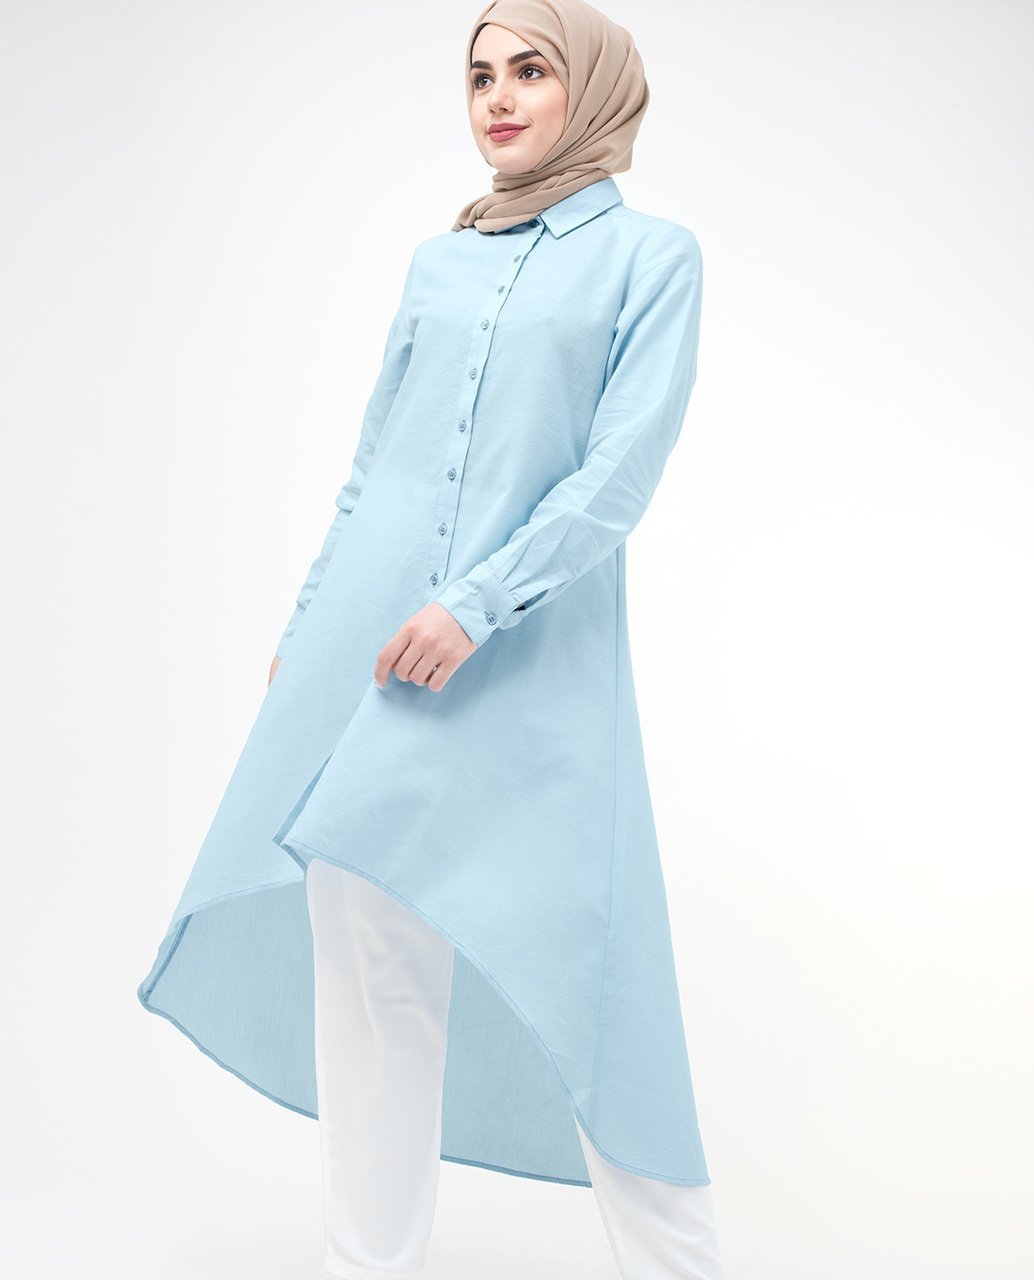 Dip Hem Shirt Dress Small Petite (- 5'2") Blue